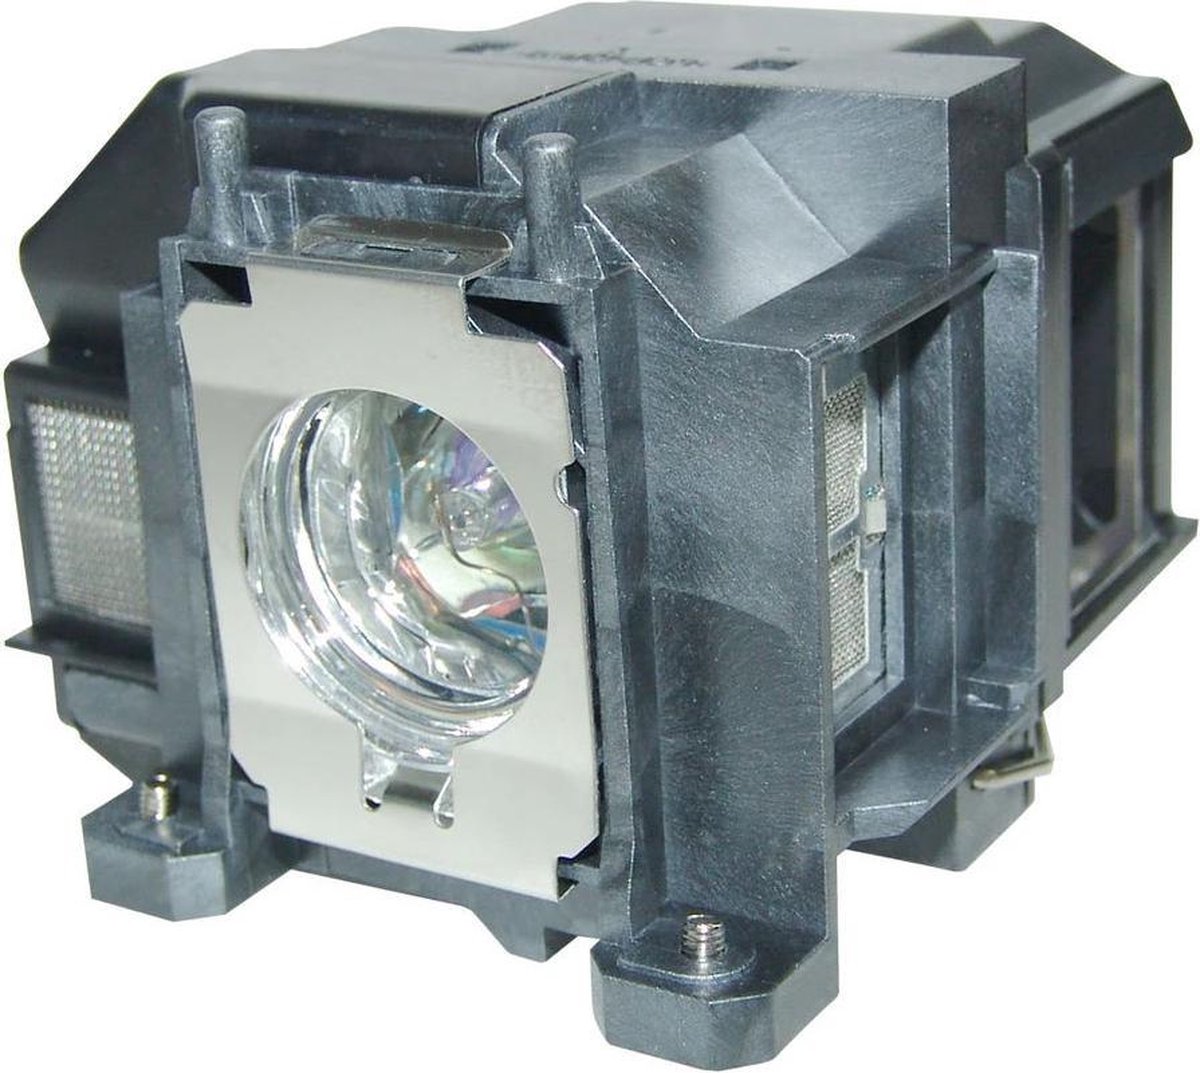 Beamerlamp geschikt voor de EPSON H432B beamer, lamp code LP67 / V13H010L67. Bevat originele P-VIP lamp, prestaties gelijk aan origineel.